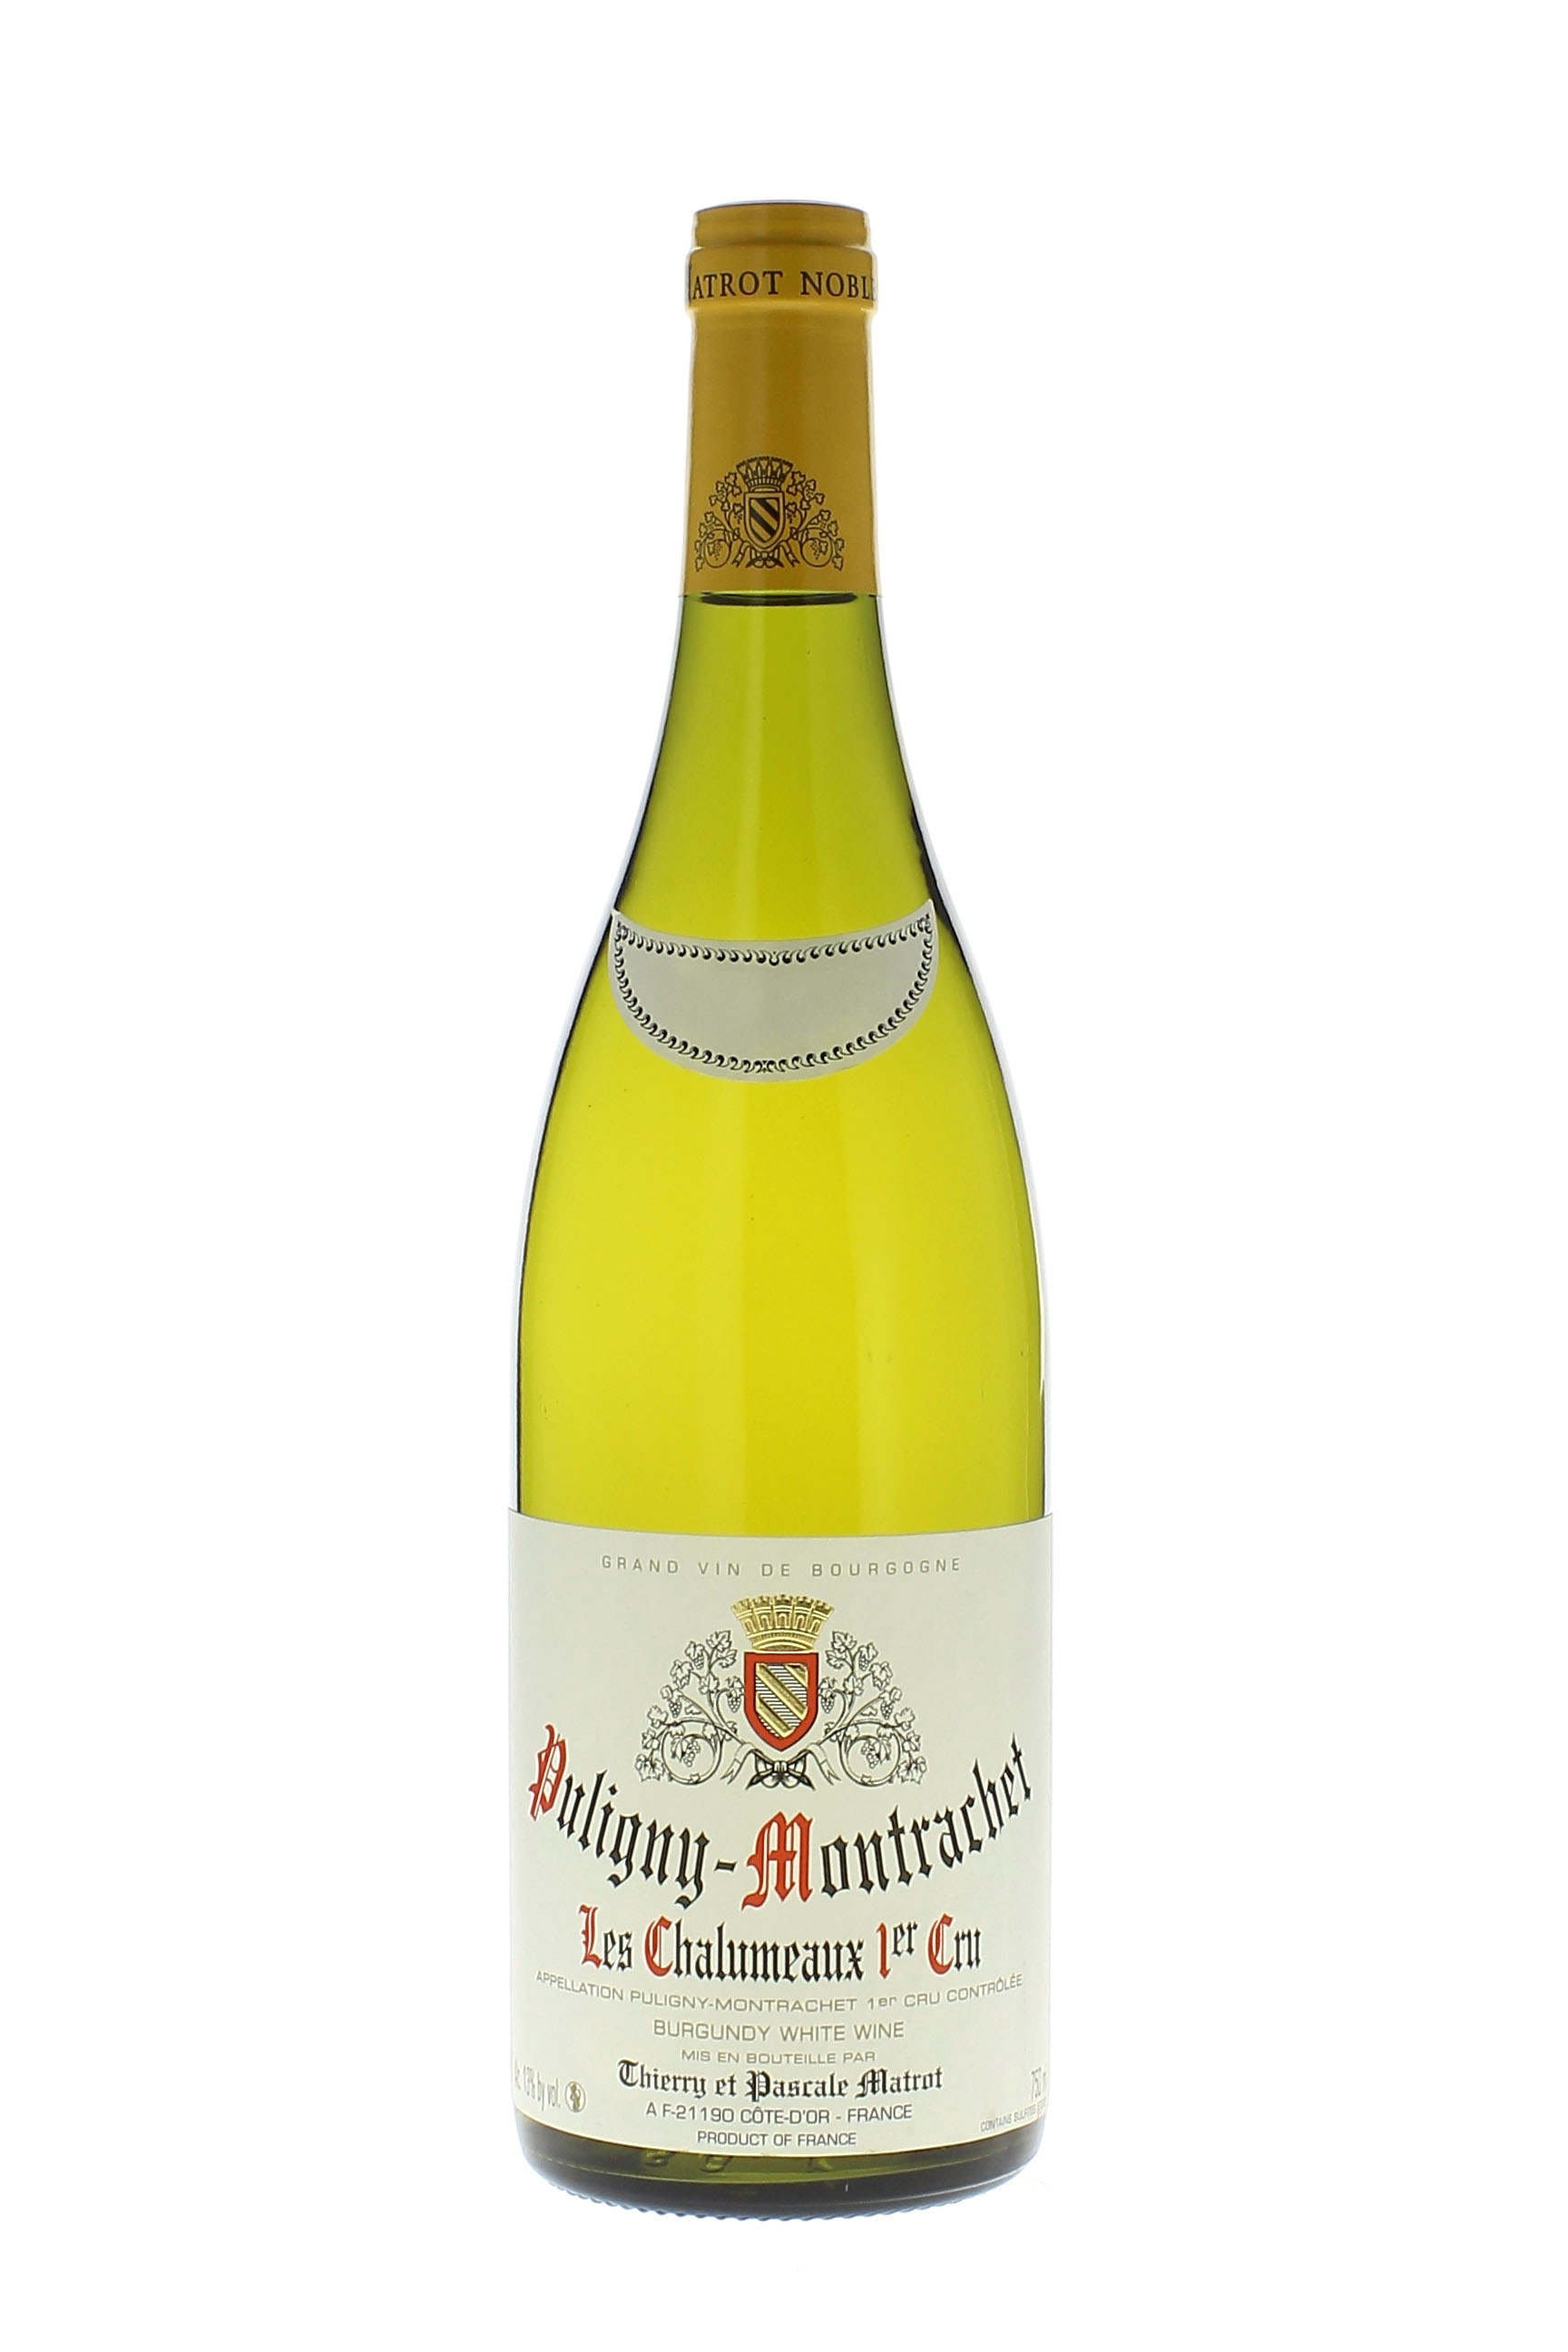 Puligny montrachet les chalumeaux 1er cru 2015 Domaine MATROT, Bourgogne blanc